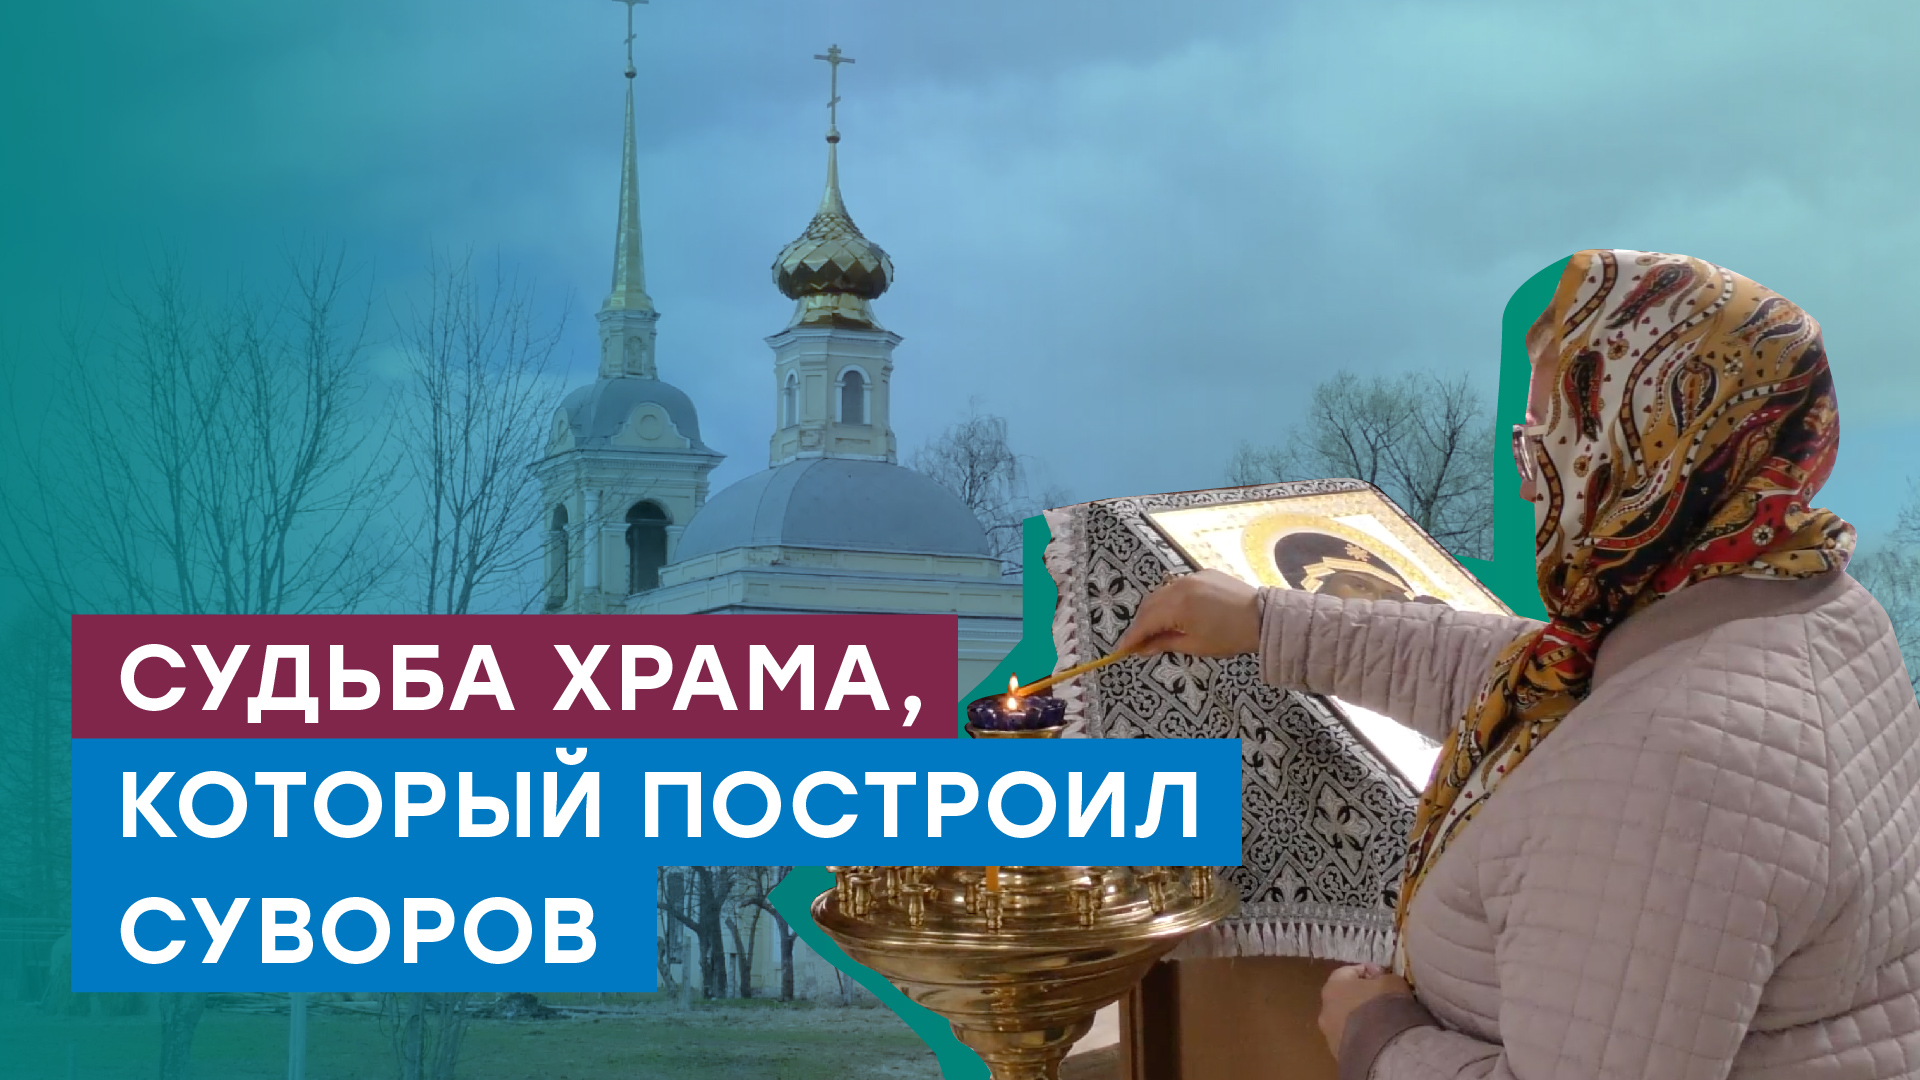 Возрождение церкви. В Ивановской области газифицирован старинный храм 18 столетия